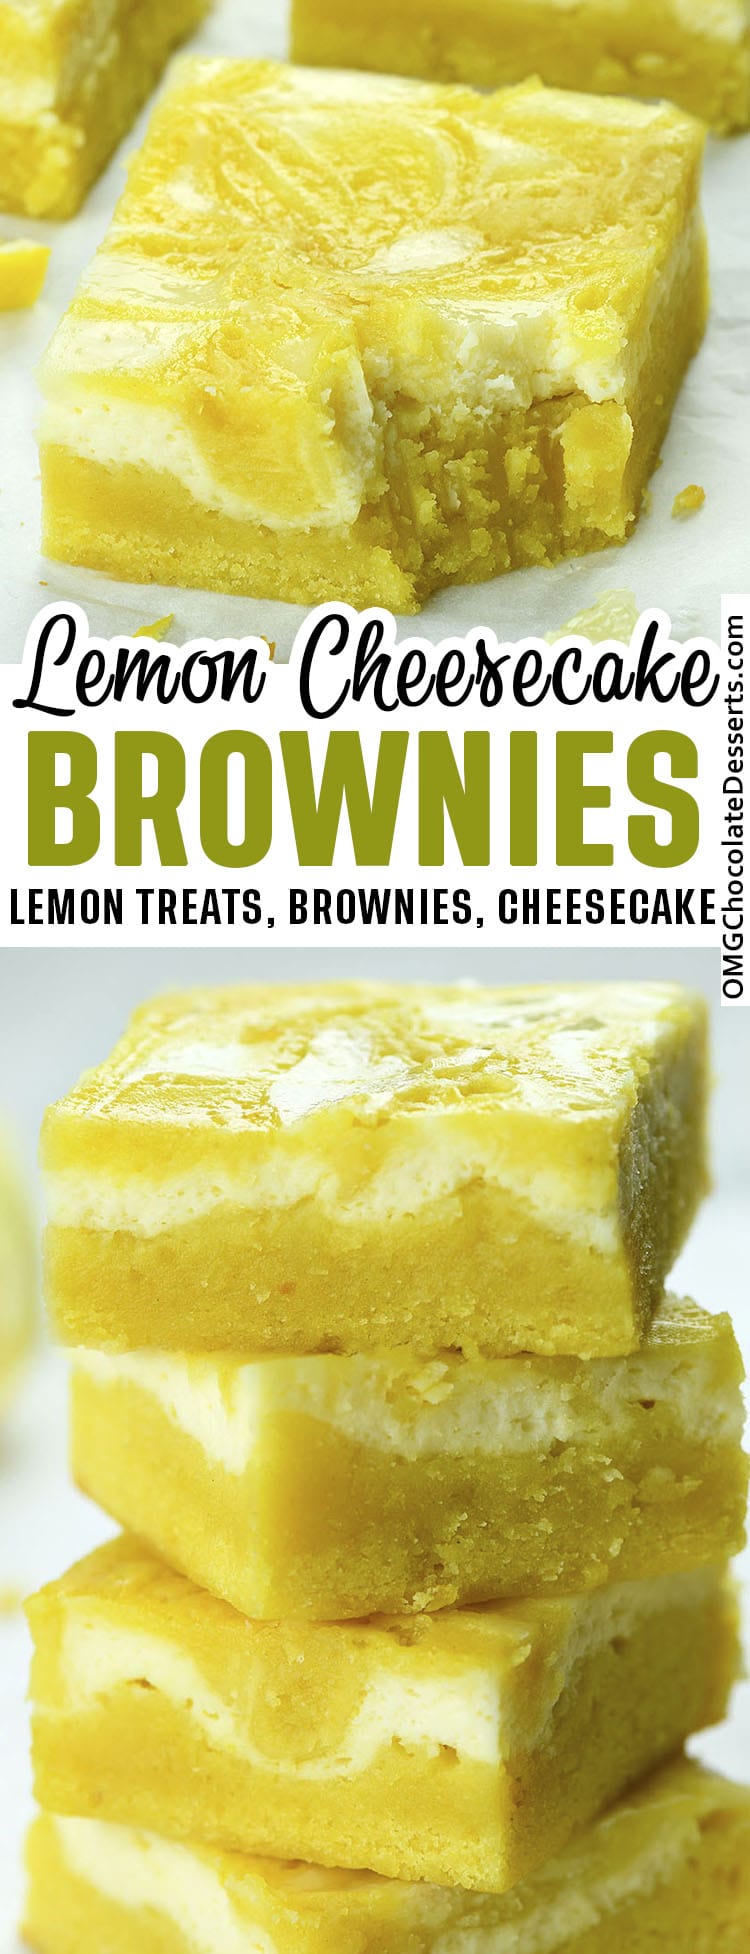 Lemon Cheesecake Brownies